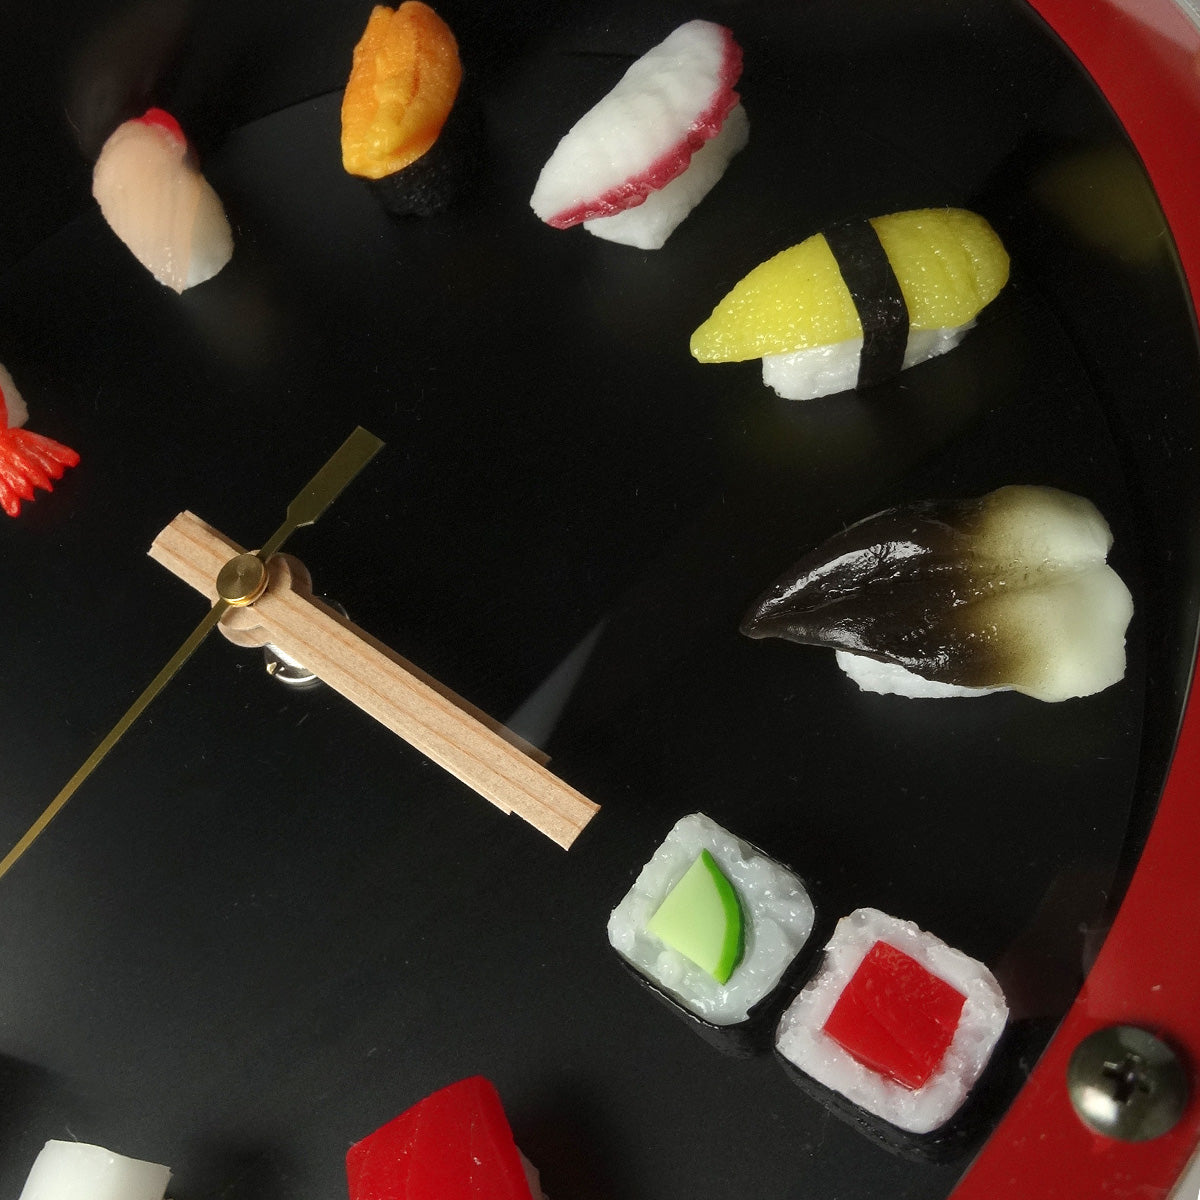 寿司時計 掛け時計 食品サンプル 寿司 寿司桶 日本土産-